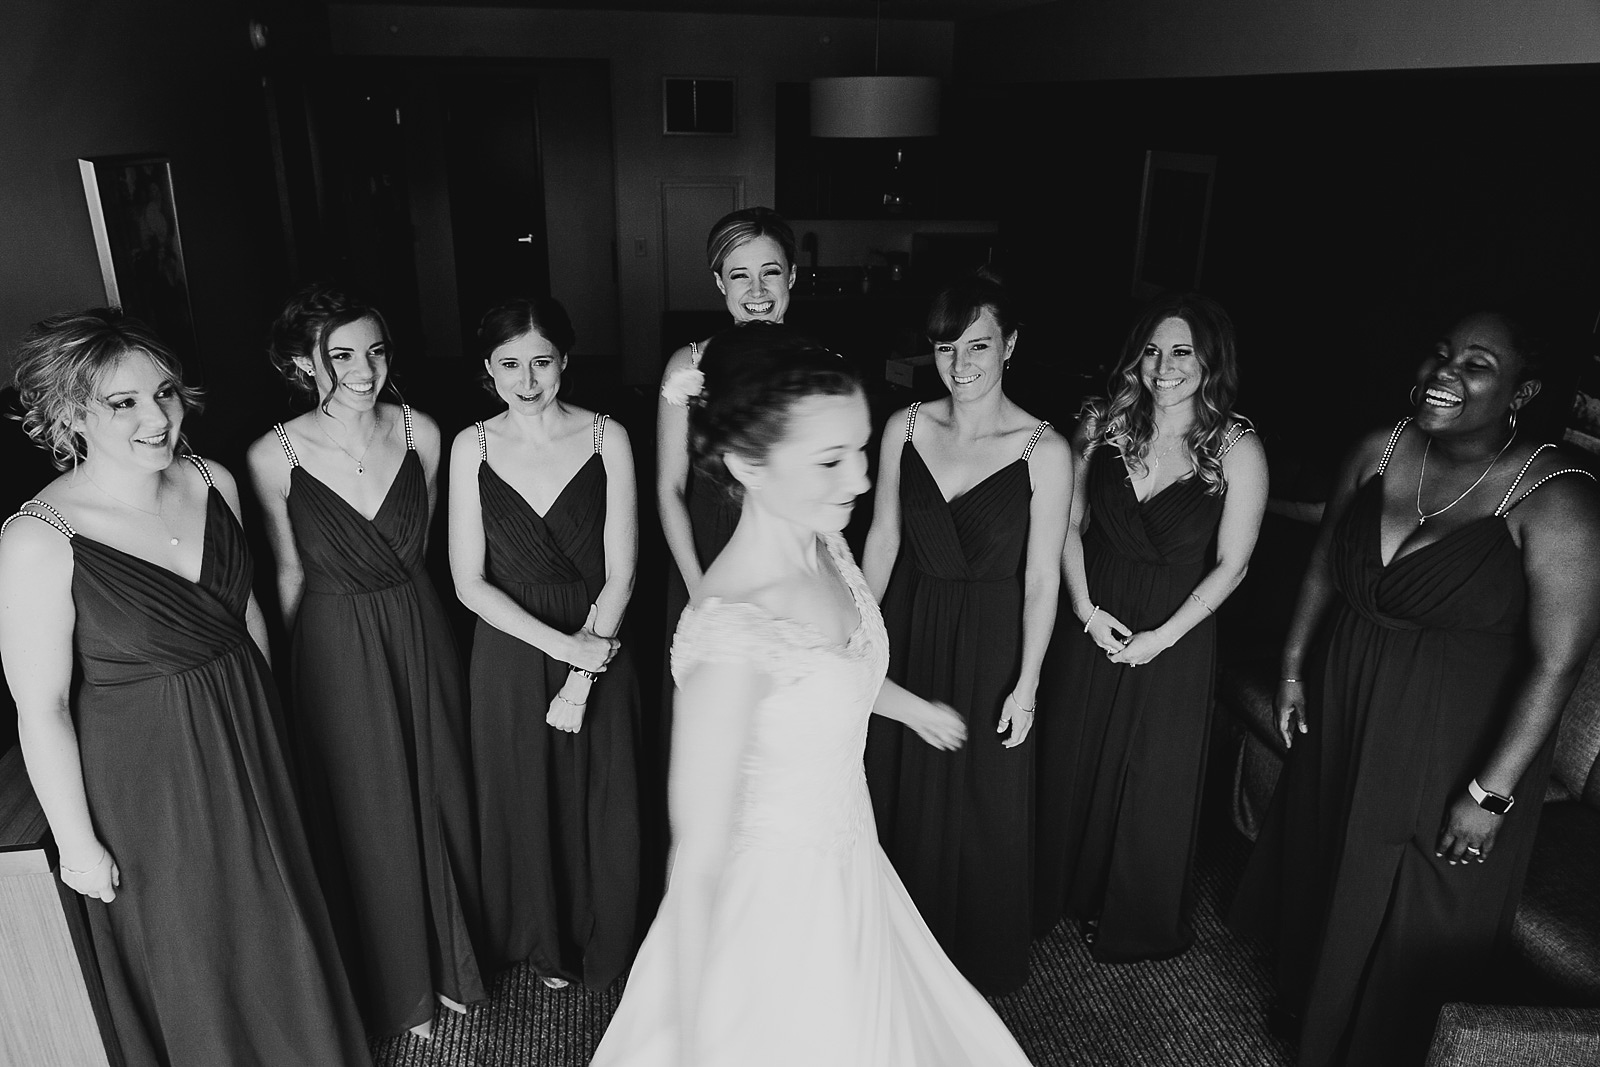 11 fun bride - University of Chicago Wedding Photos // Annemarie + Zach